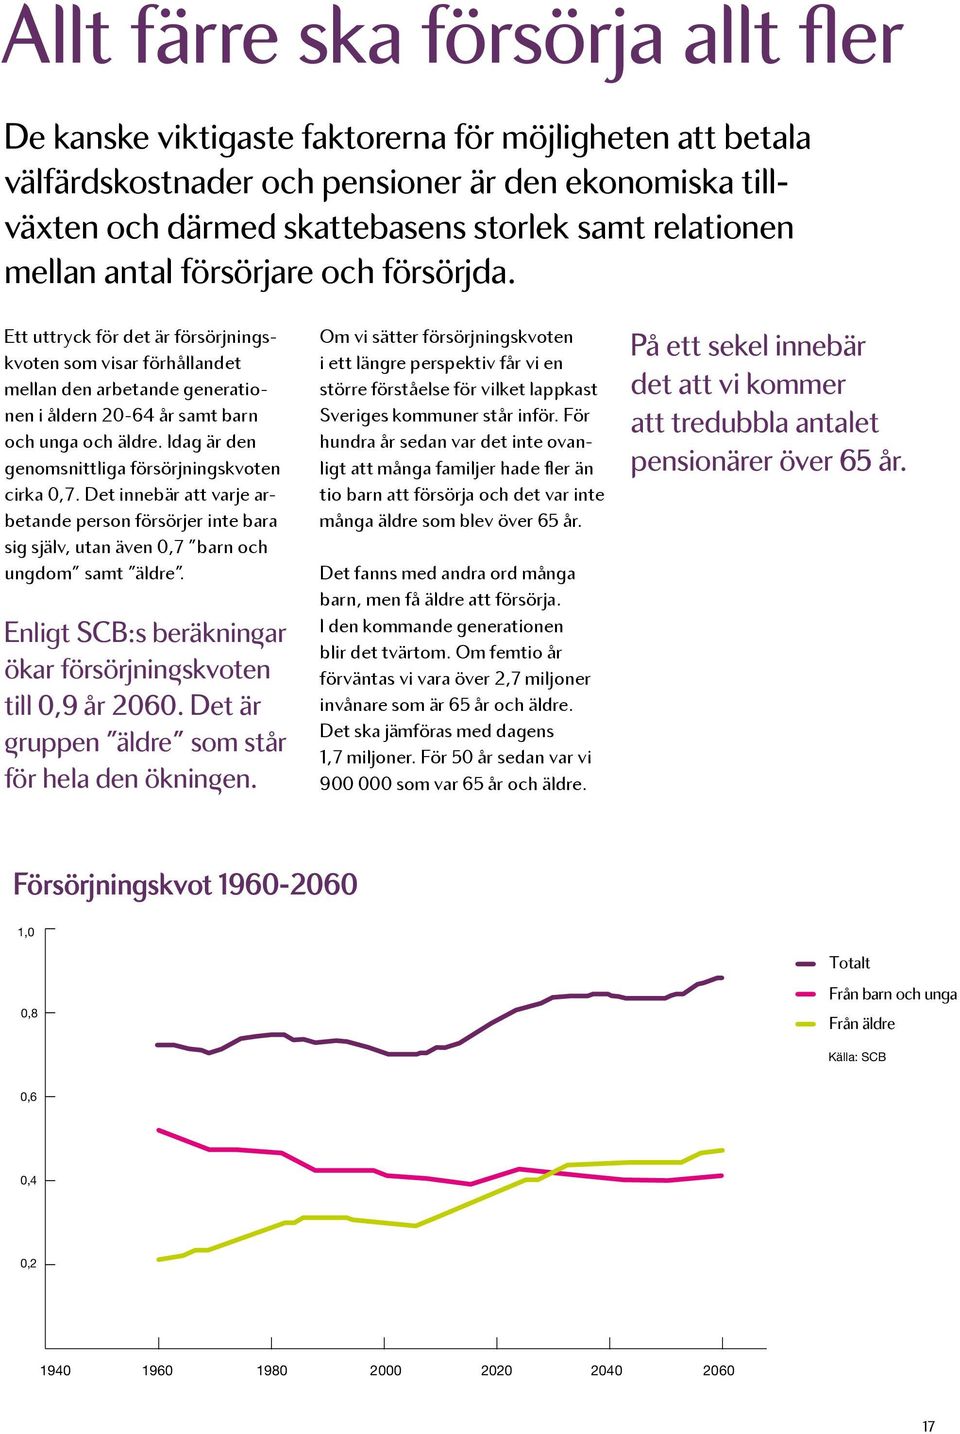 Befolkningsförändring i Sveriges kommuner 1970-2010På ett sekel innebär det att vi kommer 160 Befolkningsförändring i Sveriges kommuner 1970-2010att tredubbla antalet 120 pensionärer över 65 år.